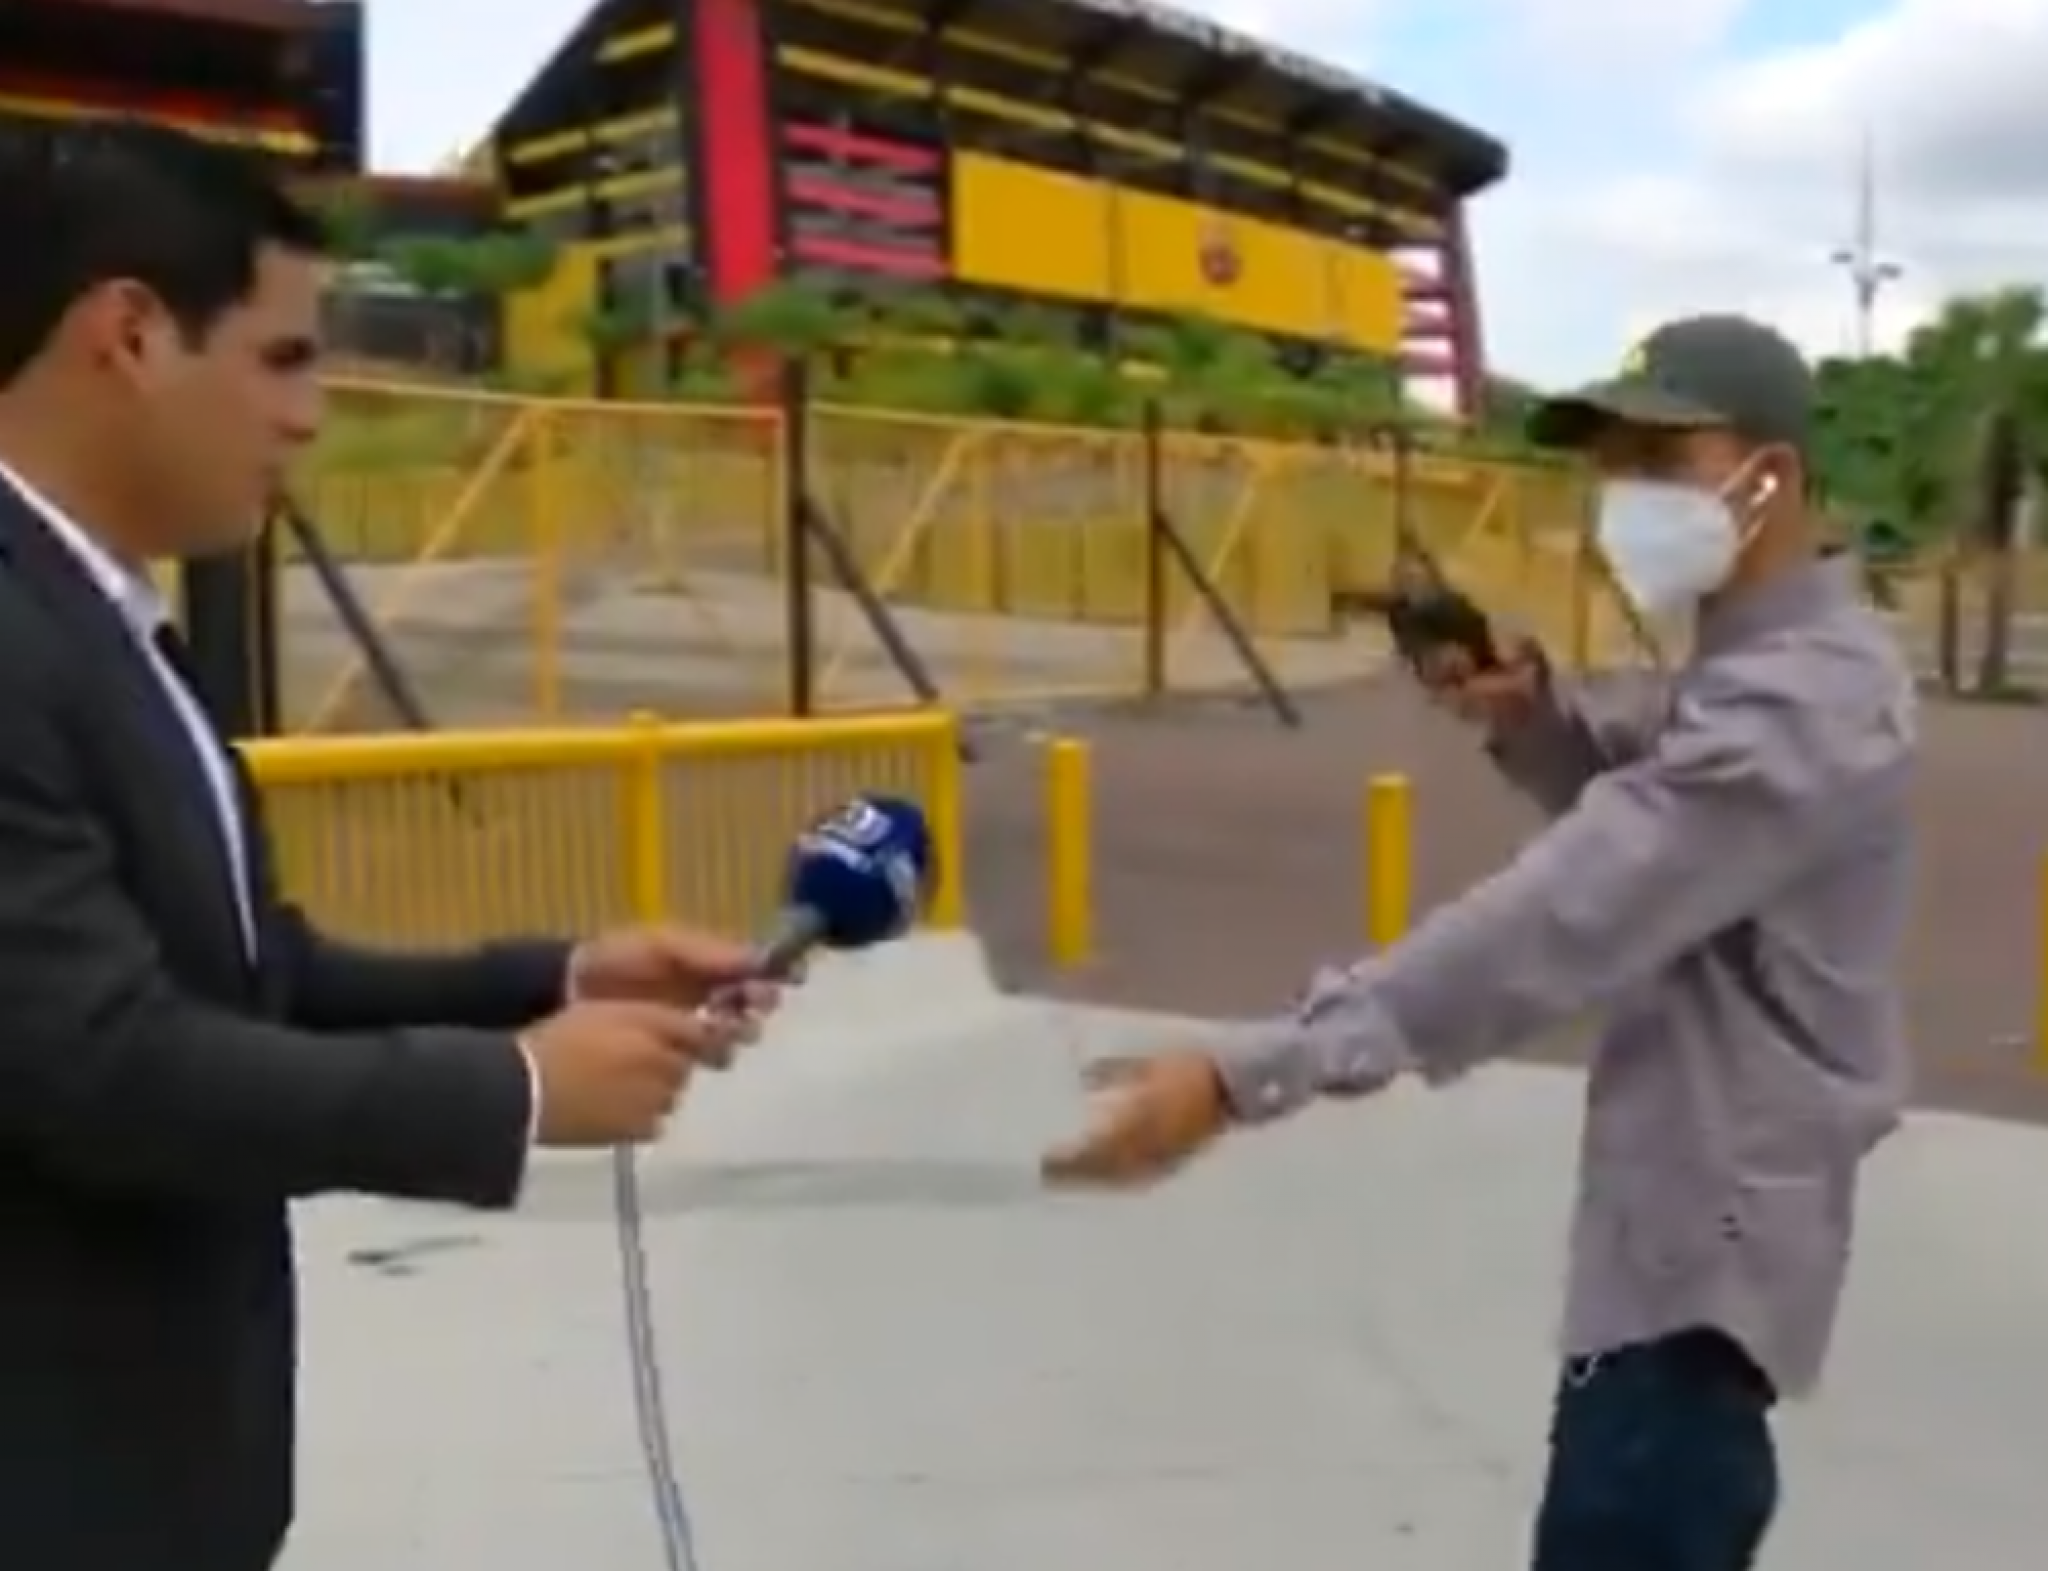 Pretio novinaru pištoljem, Ekvador